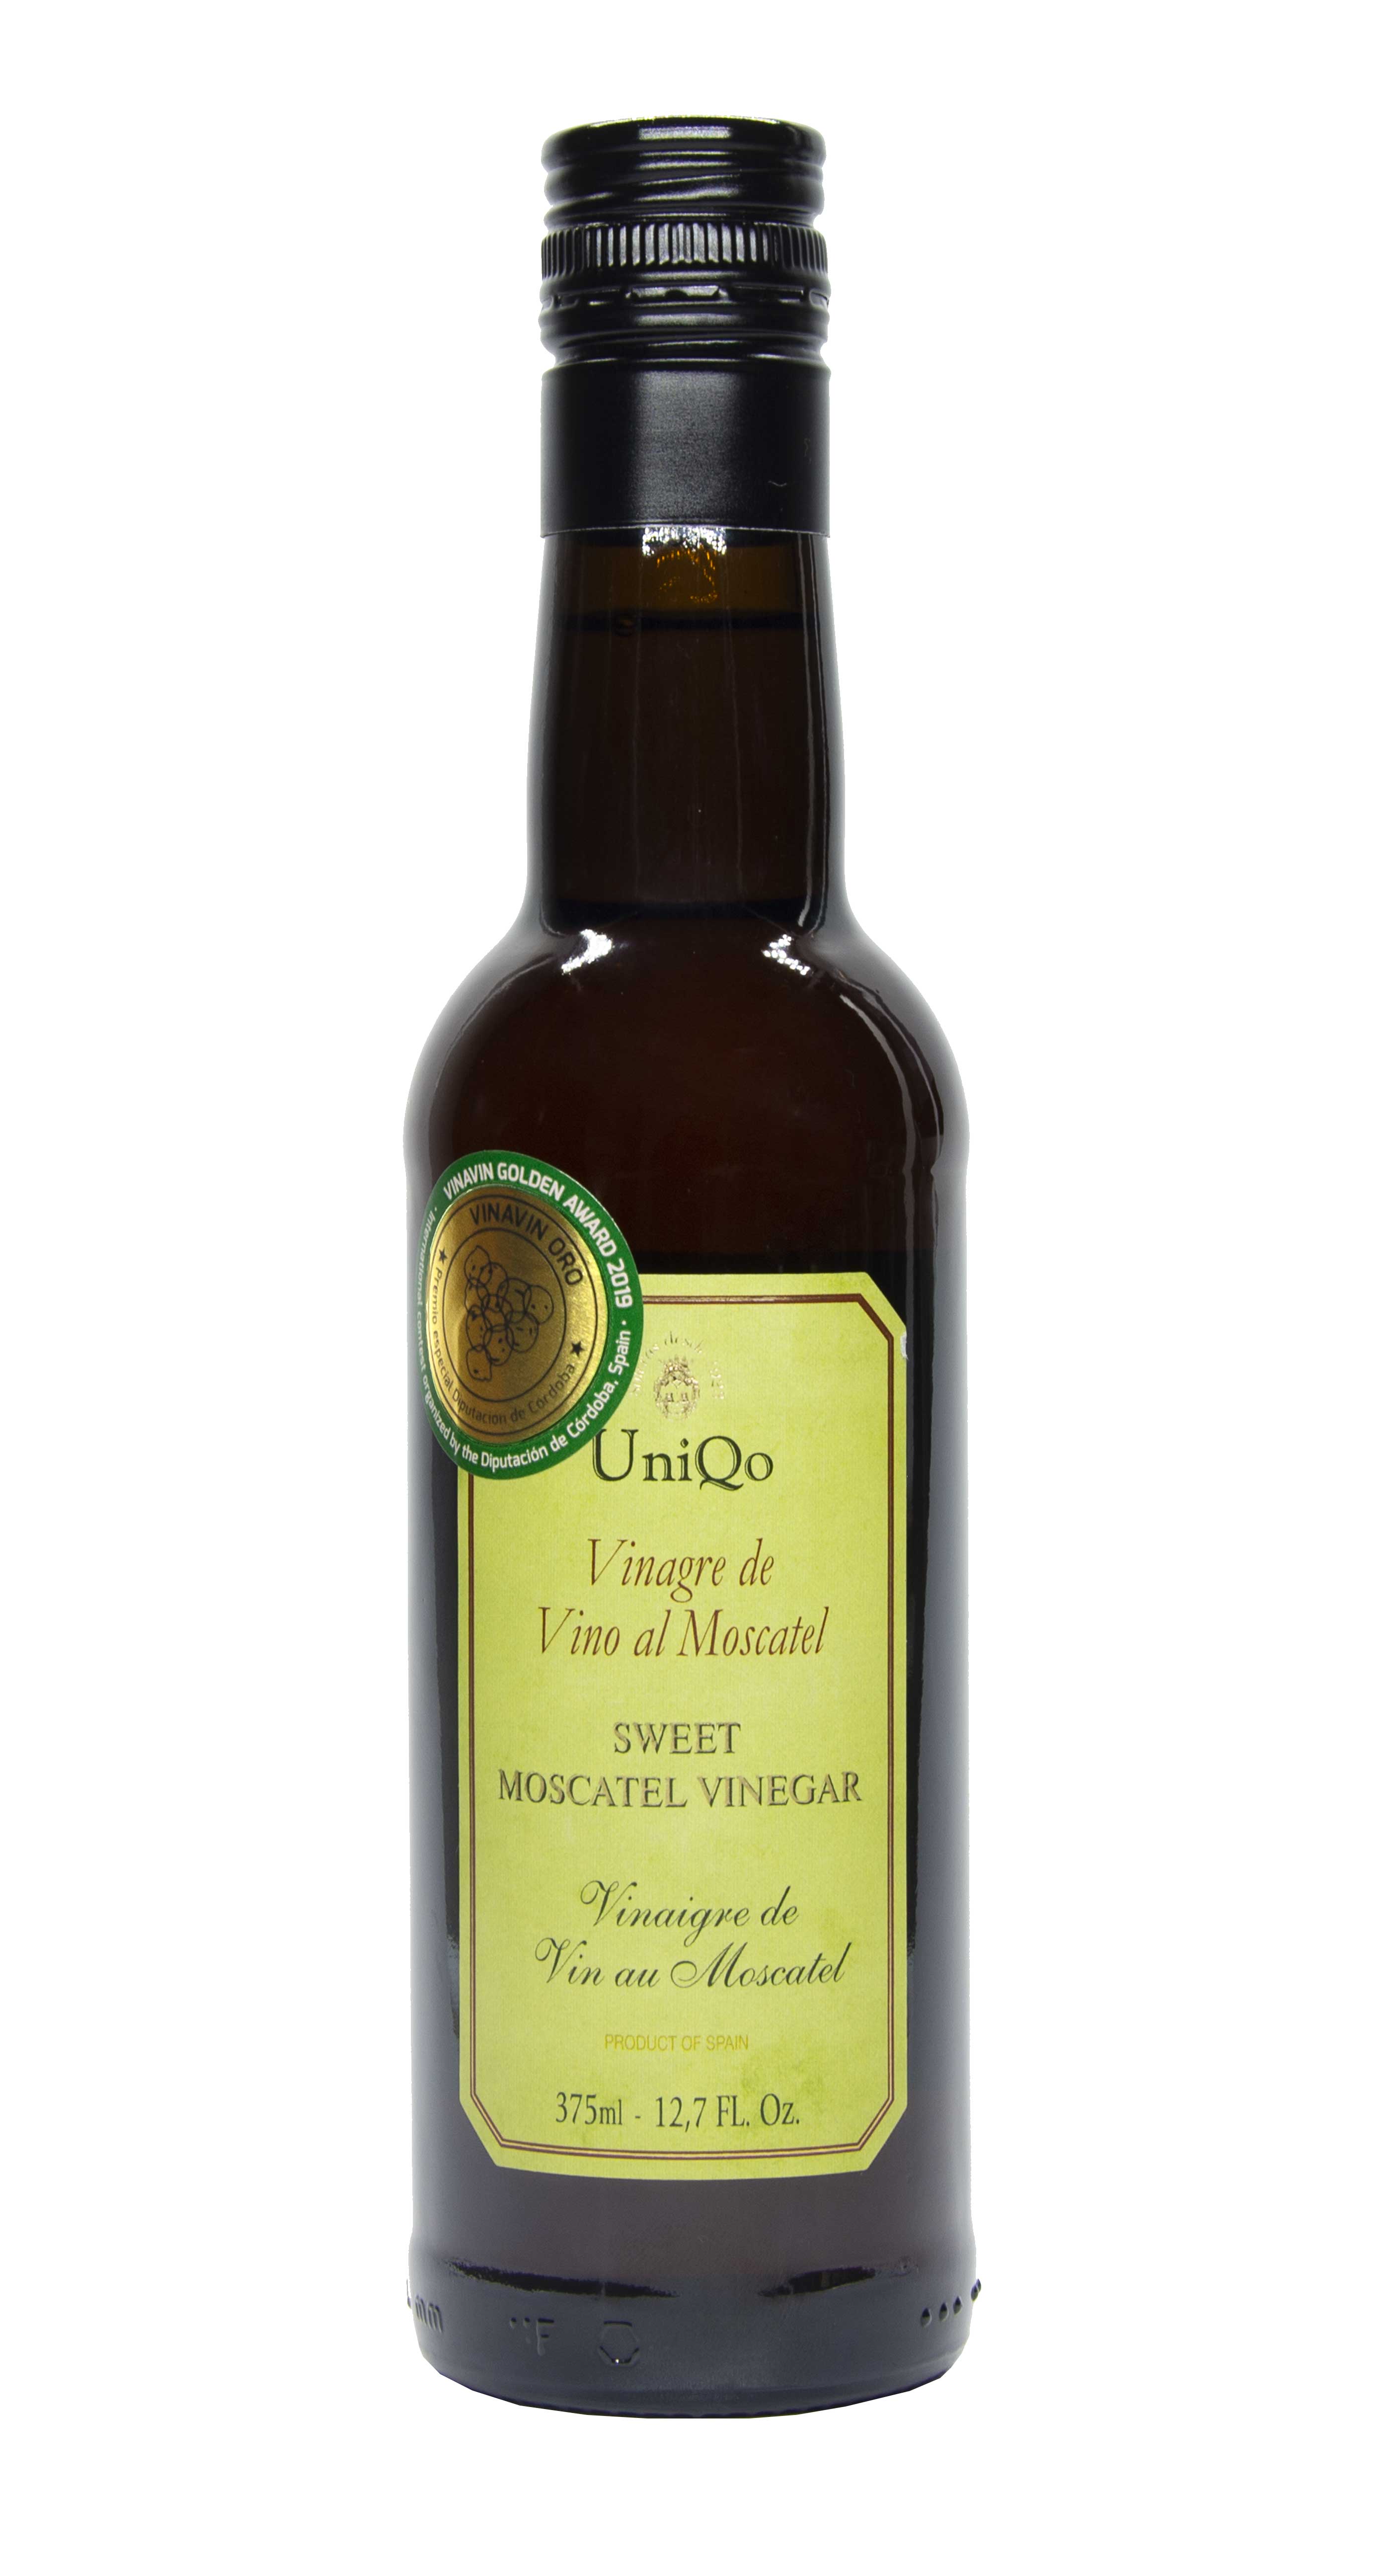 UniCo 15 year aged moscatel vinegar